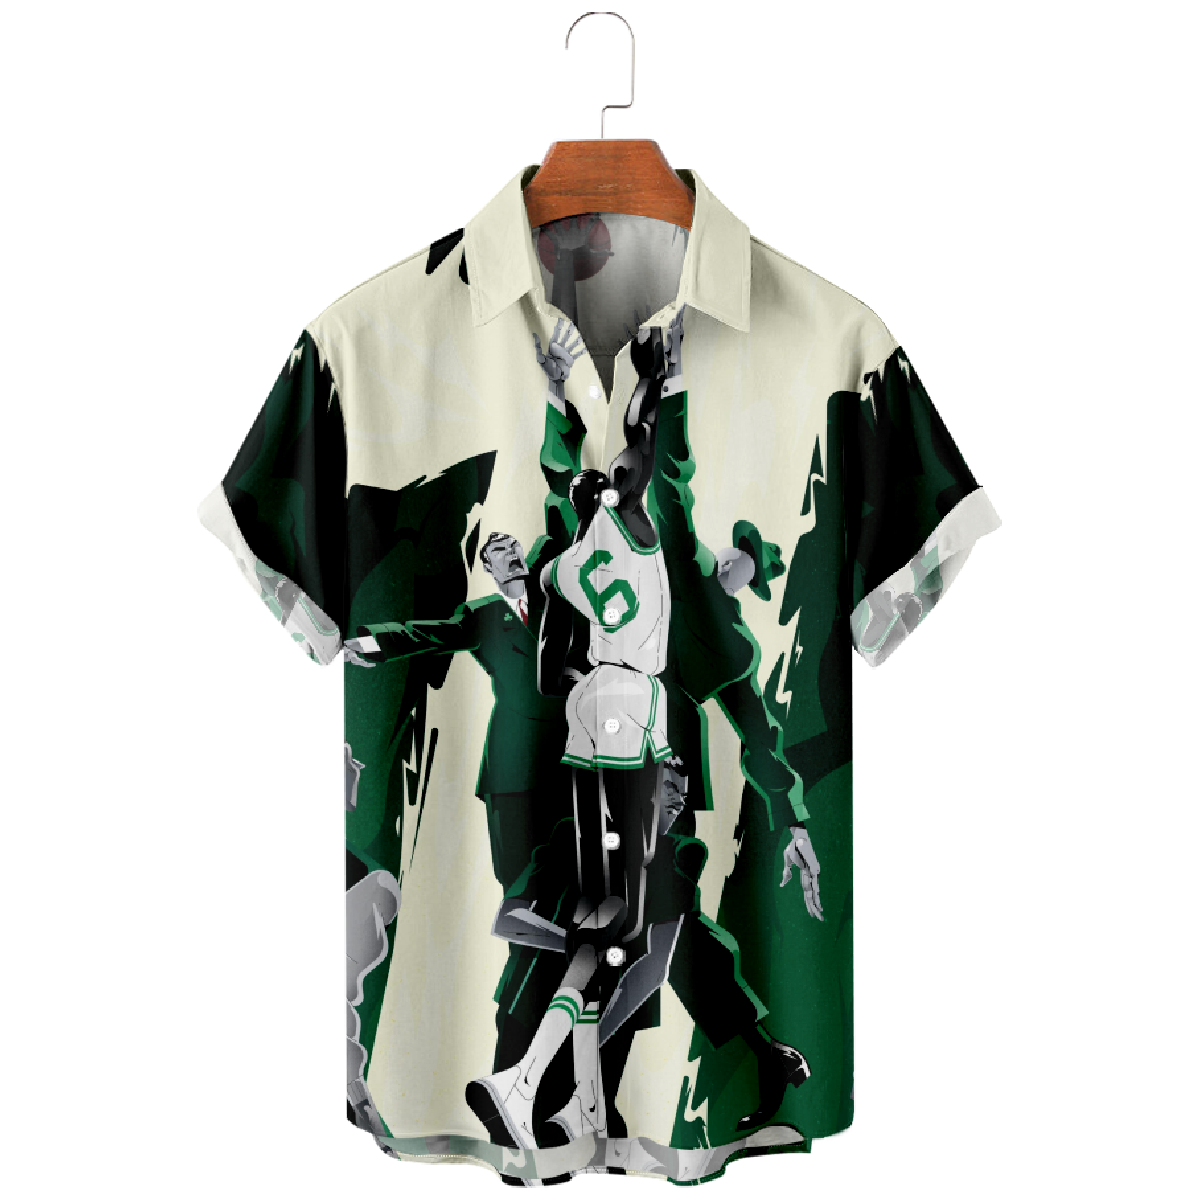 Boston Basketball Number 6 Button Up Shirt Mens Dark Green Short Sleeve Shirt 